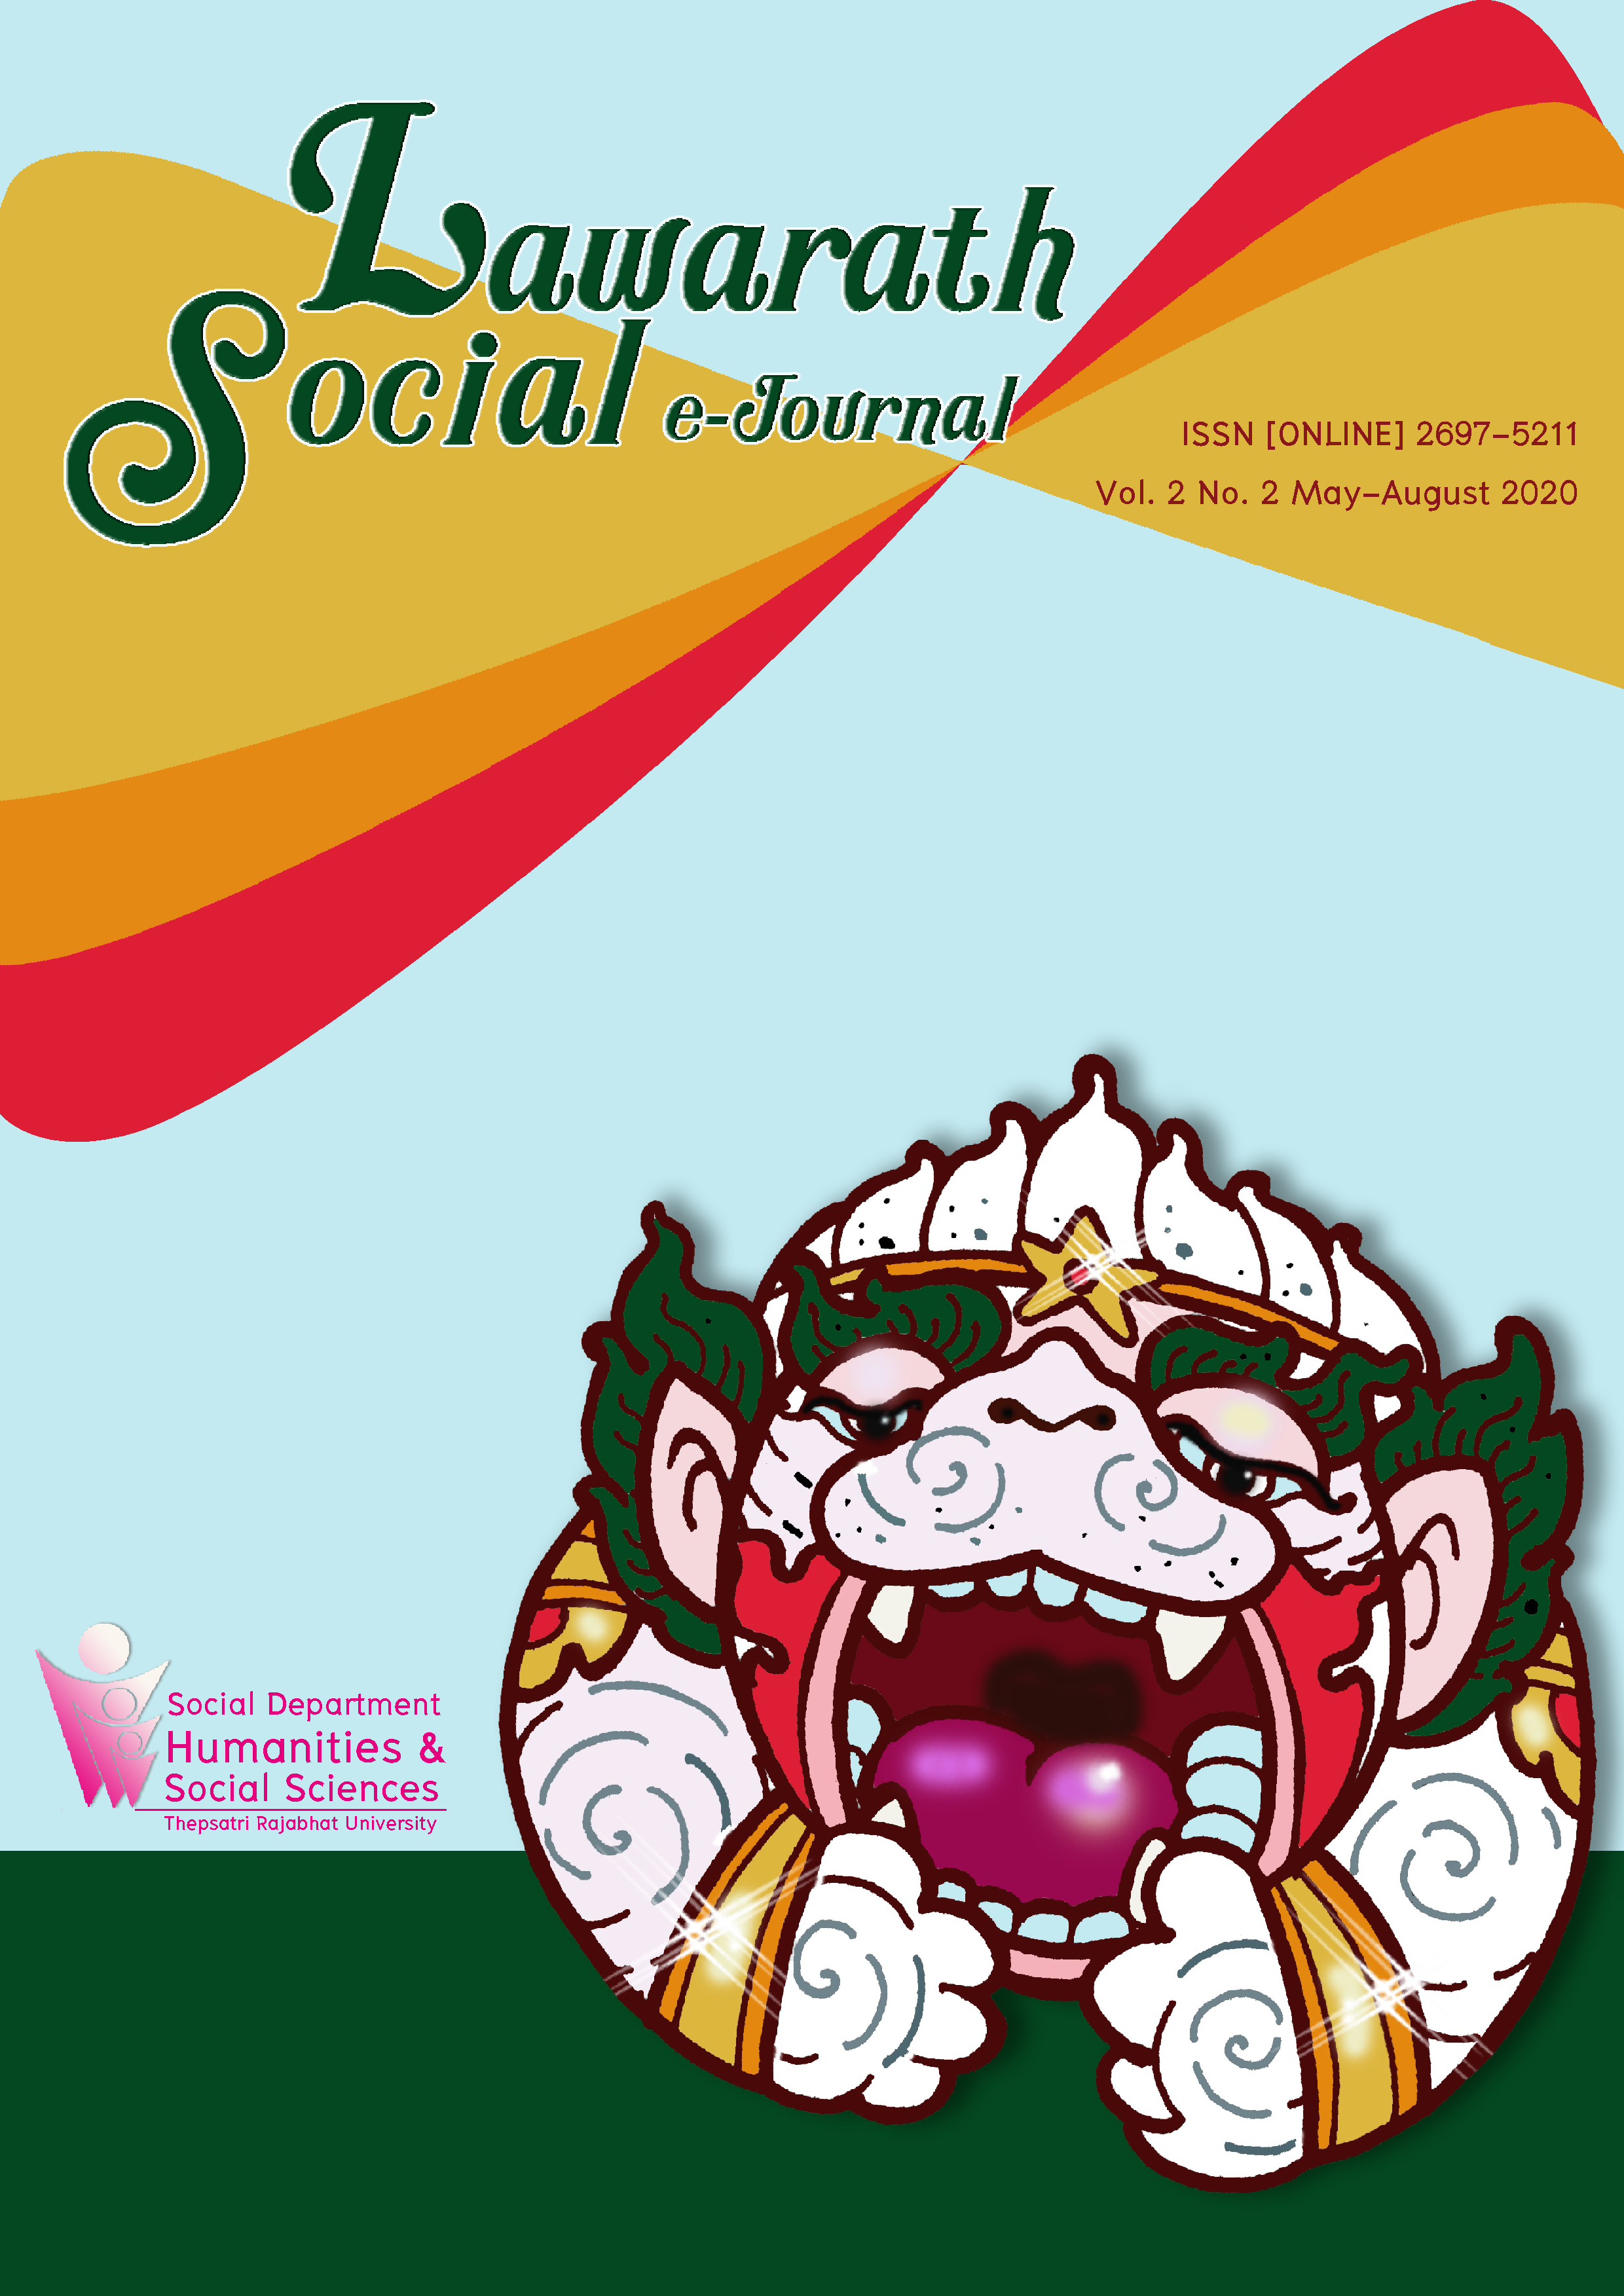 					View Vol. 2 No. 2 (2020): Lawarath Social E-Journal Vol. 2 No. 2 (พฤษภาคม - สิงหาคม 2563)
				